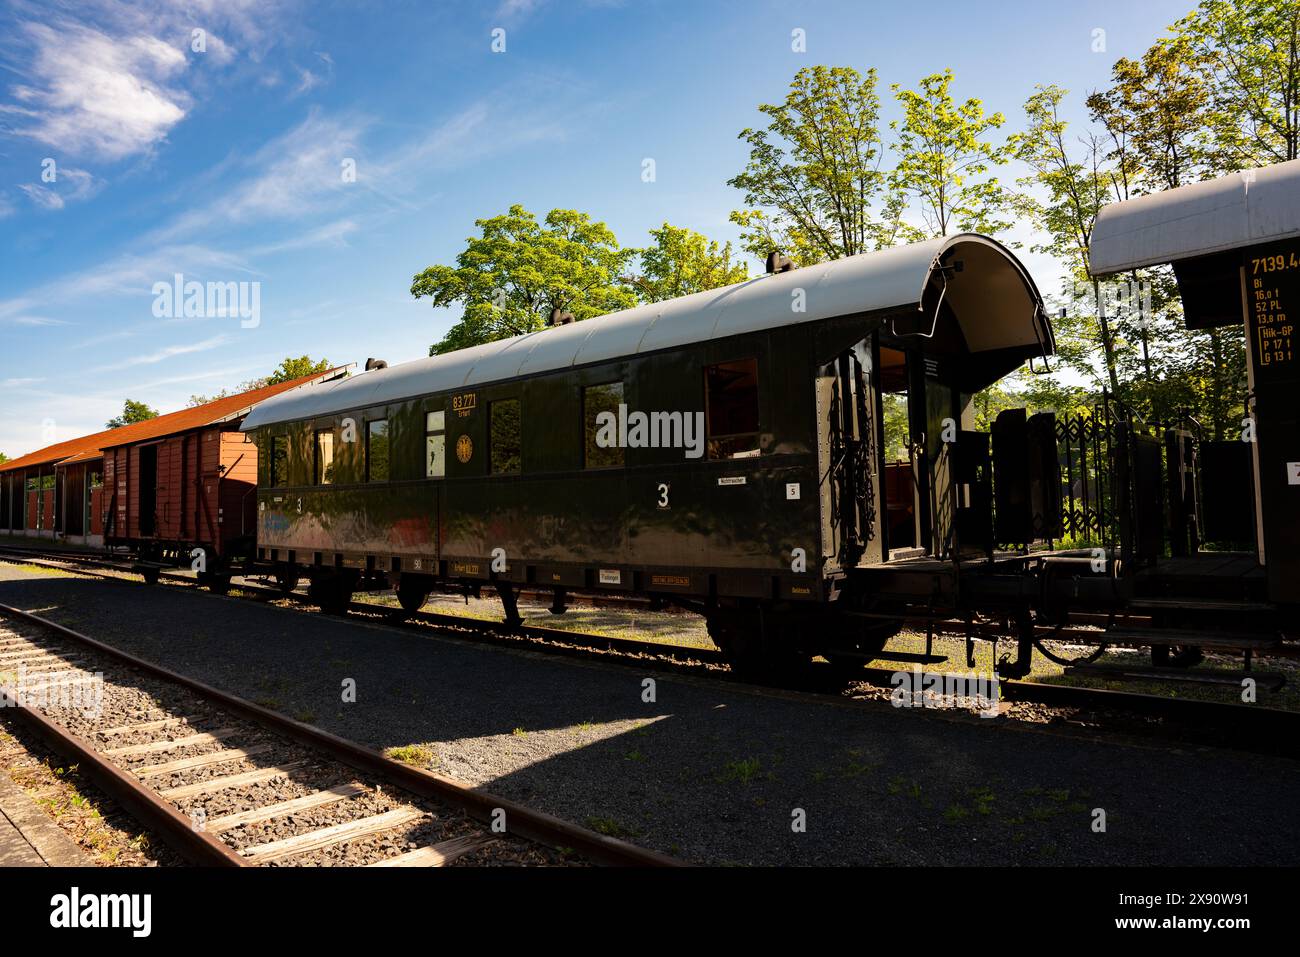 Alter Wagen, alter Zug, historischer Zug, Eisenbahnwagen, alter Eisenbahnwagen, Zugwagen, Eisenbahnwagen, Traditionswagen Stockfoto